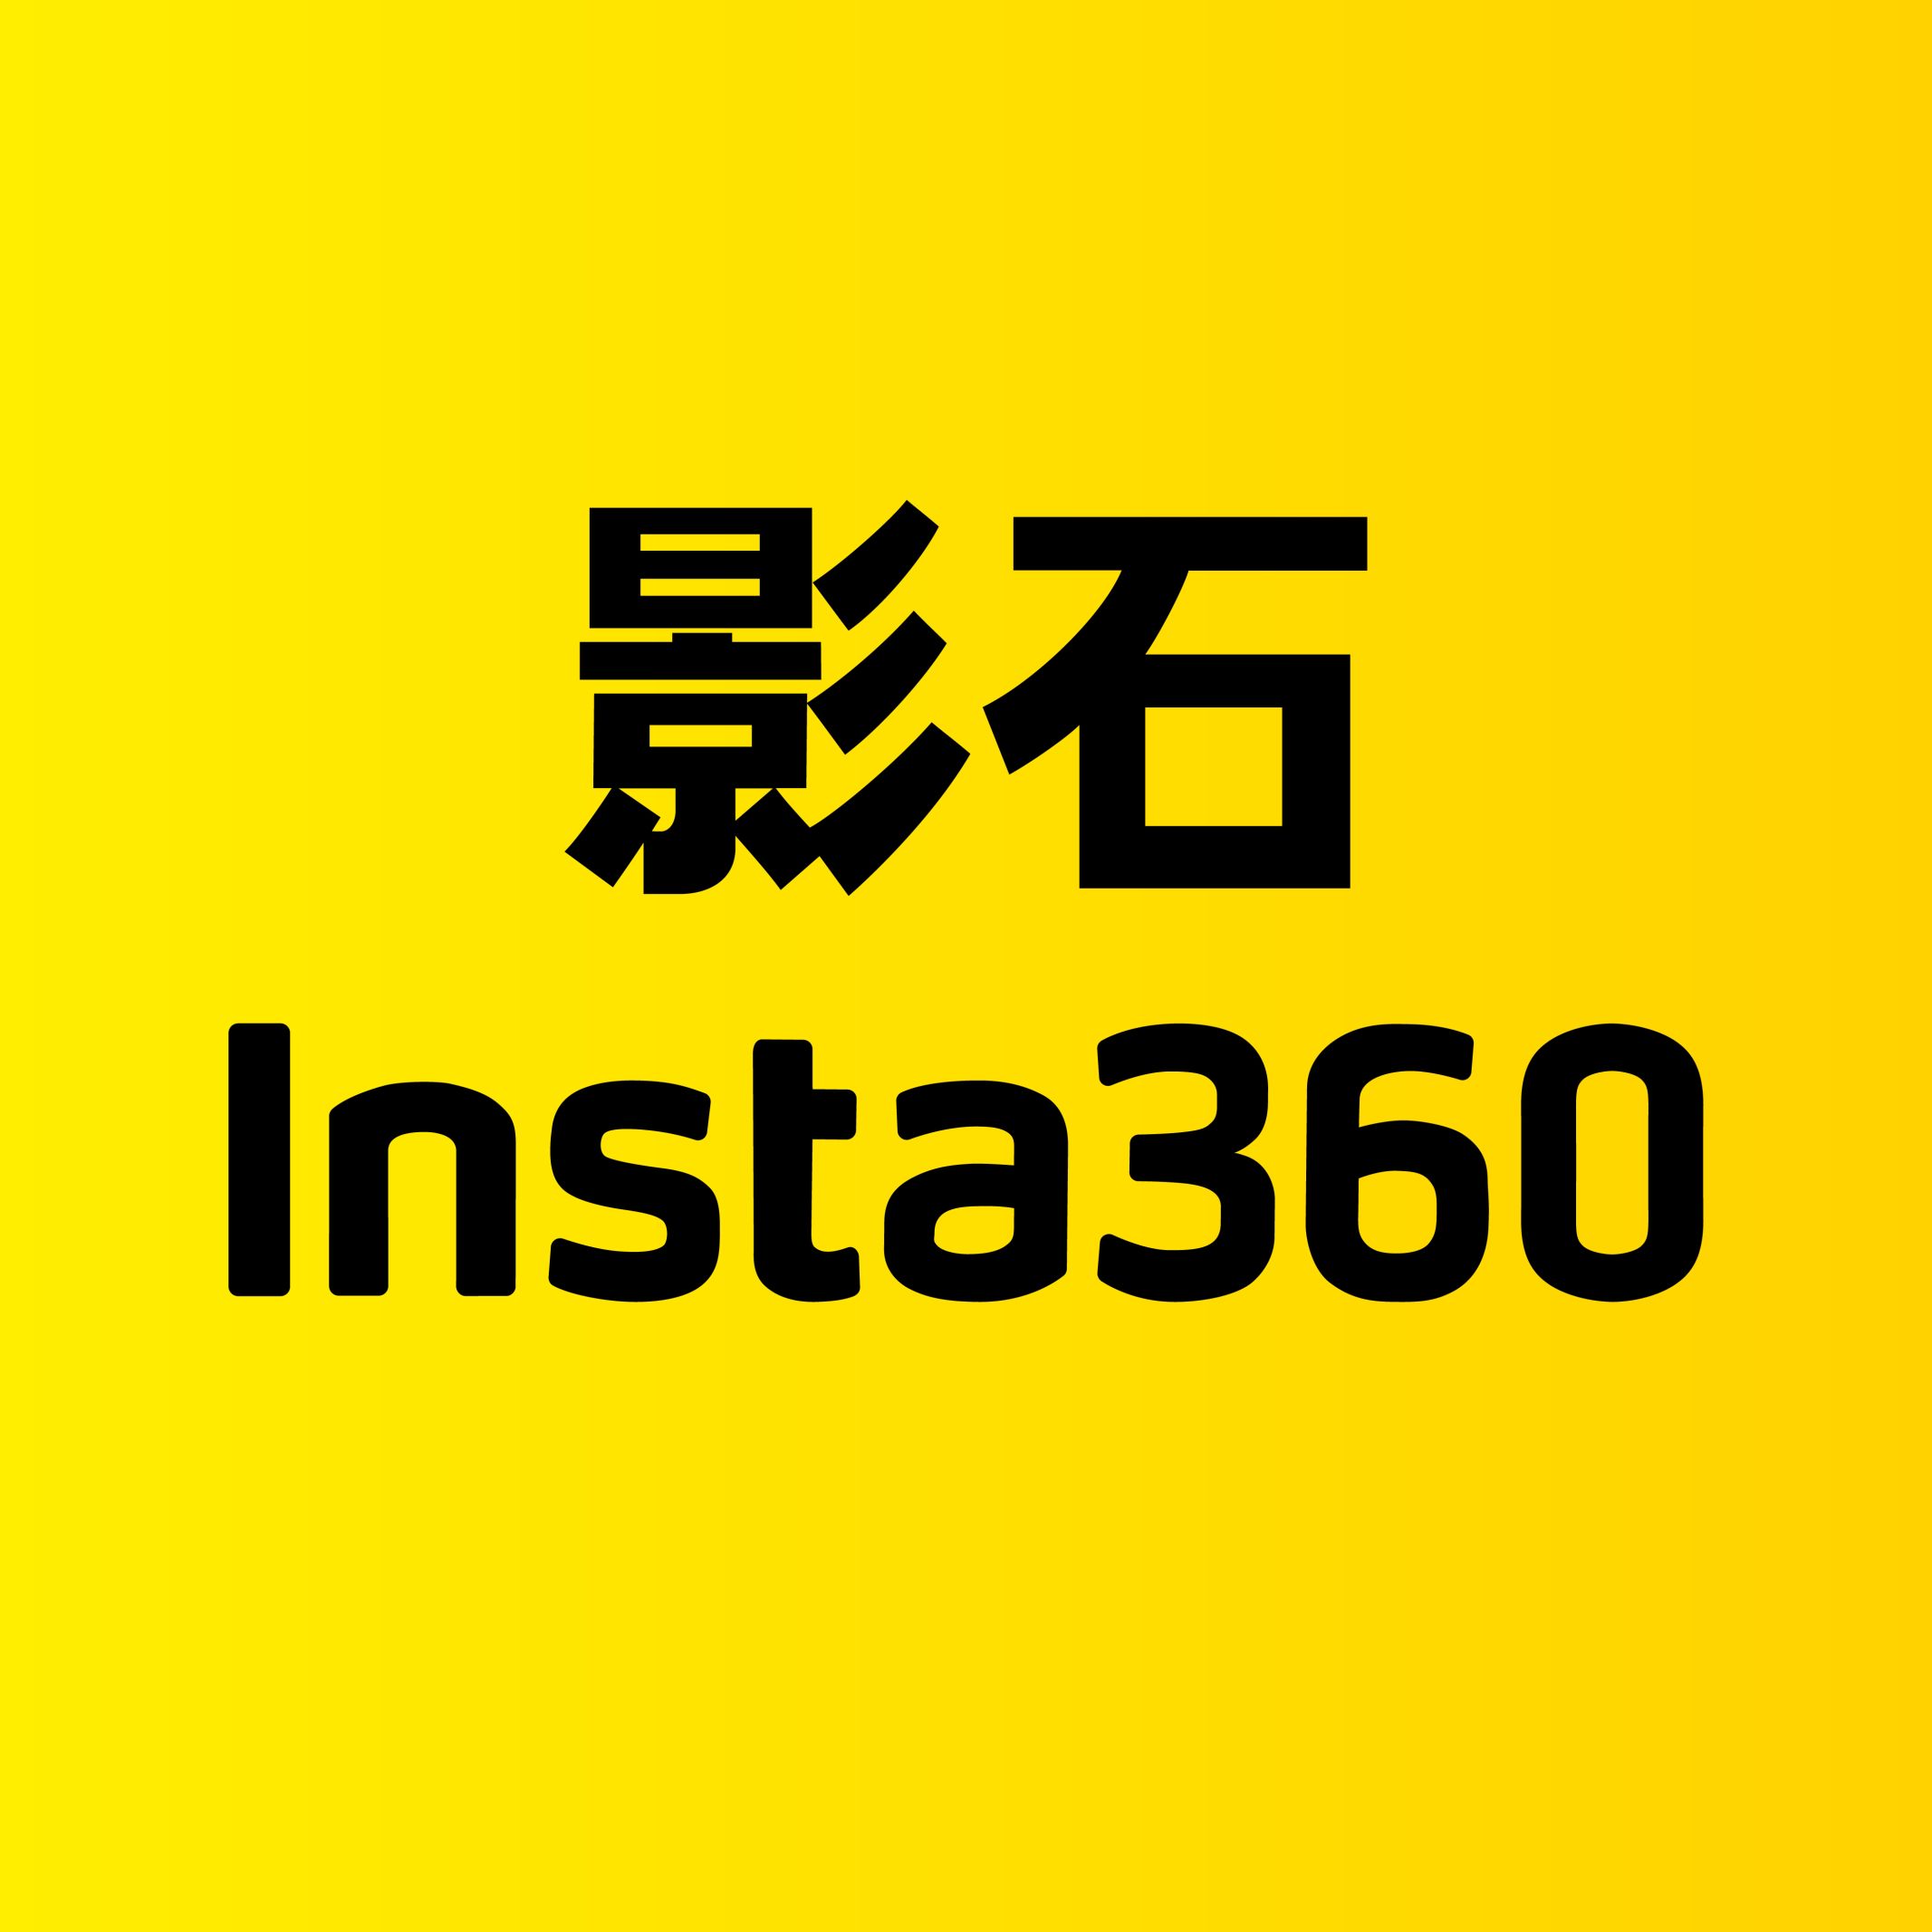 Insta360 Logo